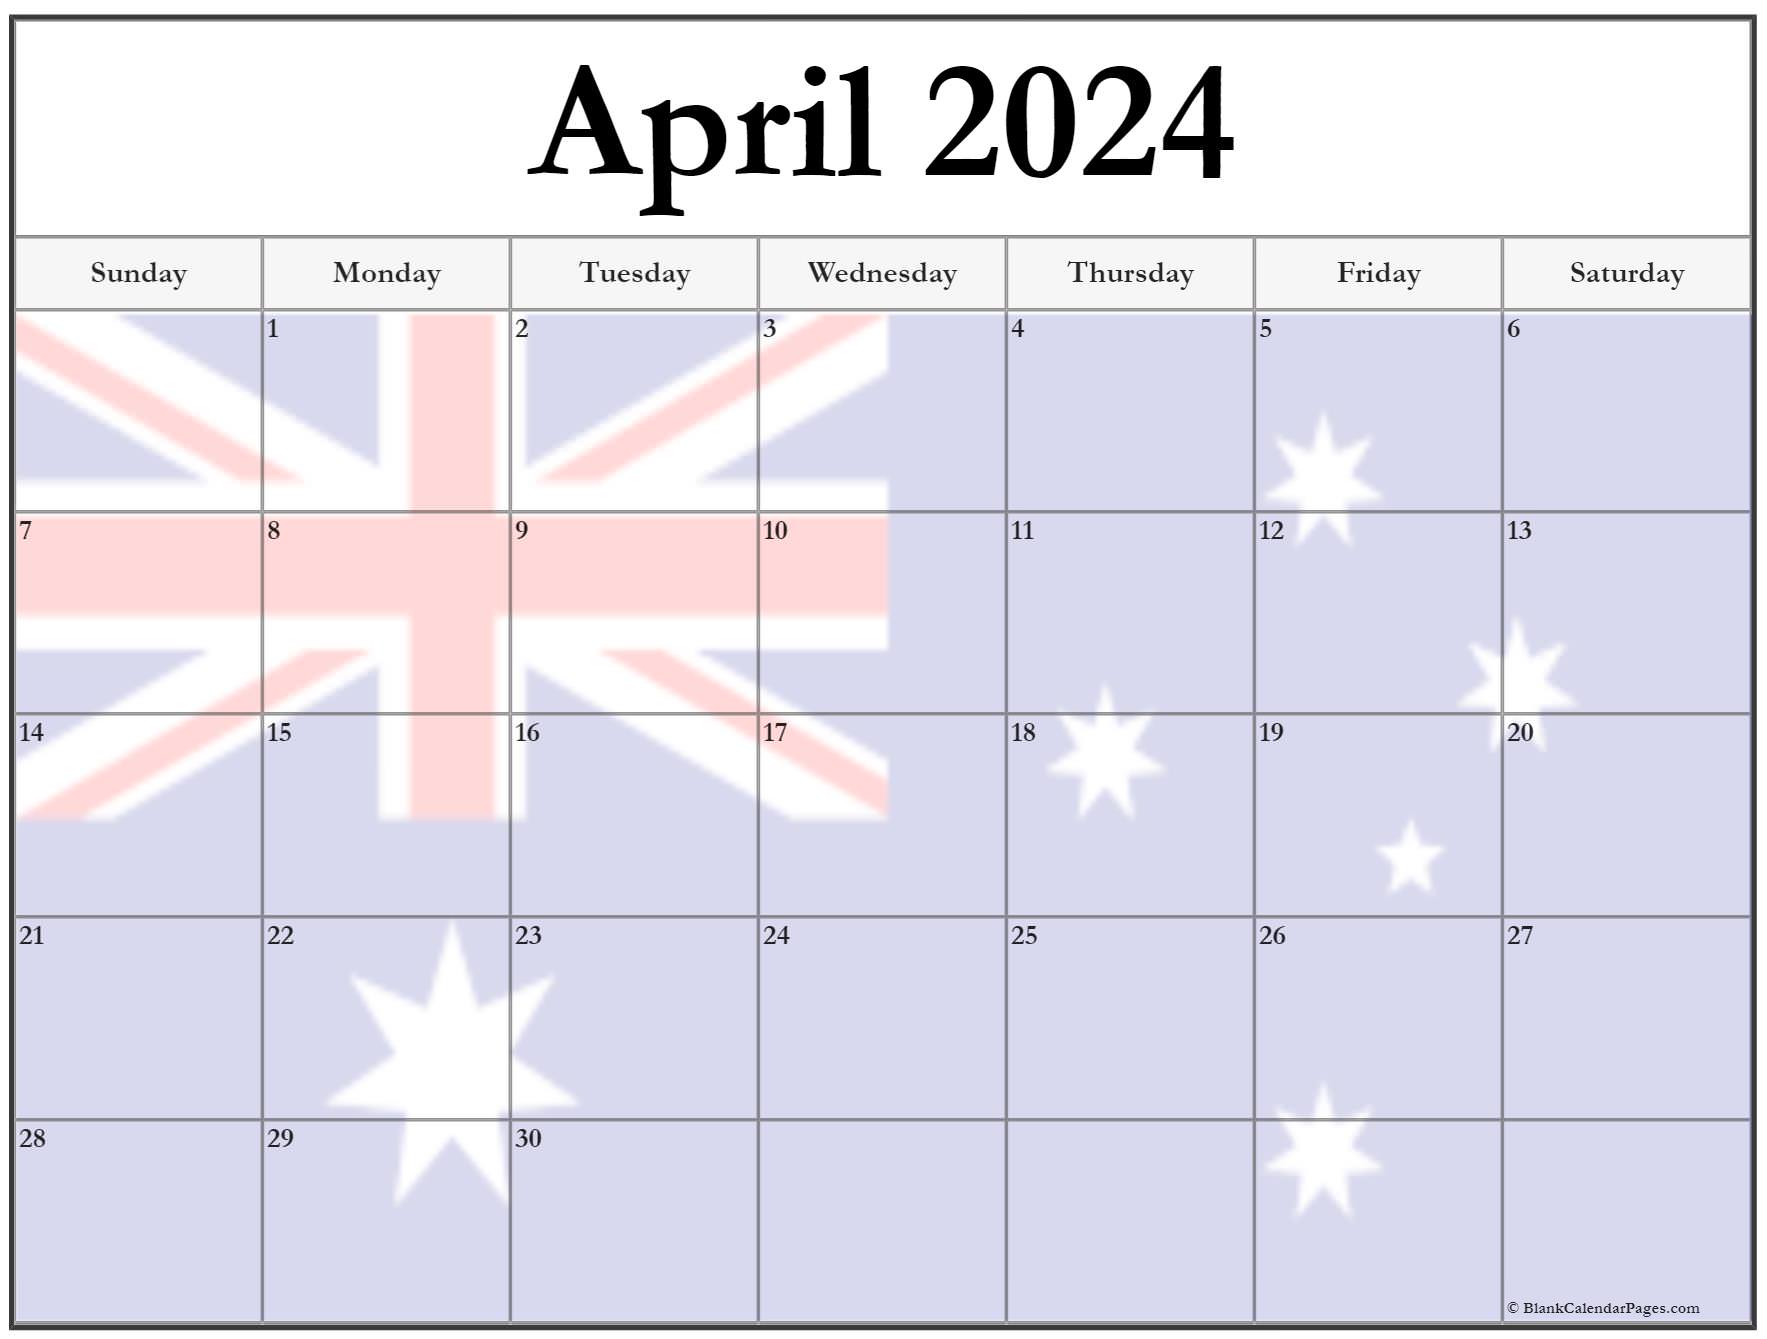 free-2023-calendar-australia-calendar-2023-with-federal-holidays